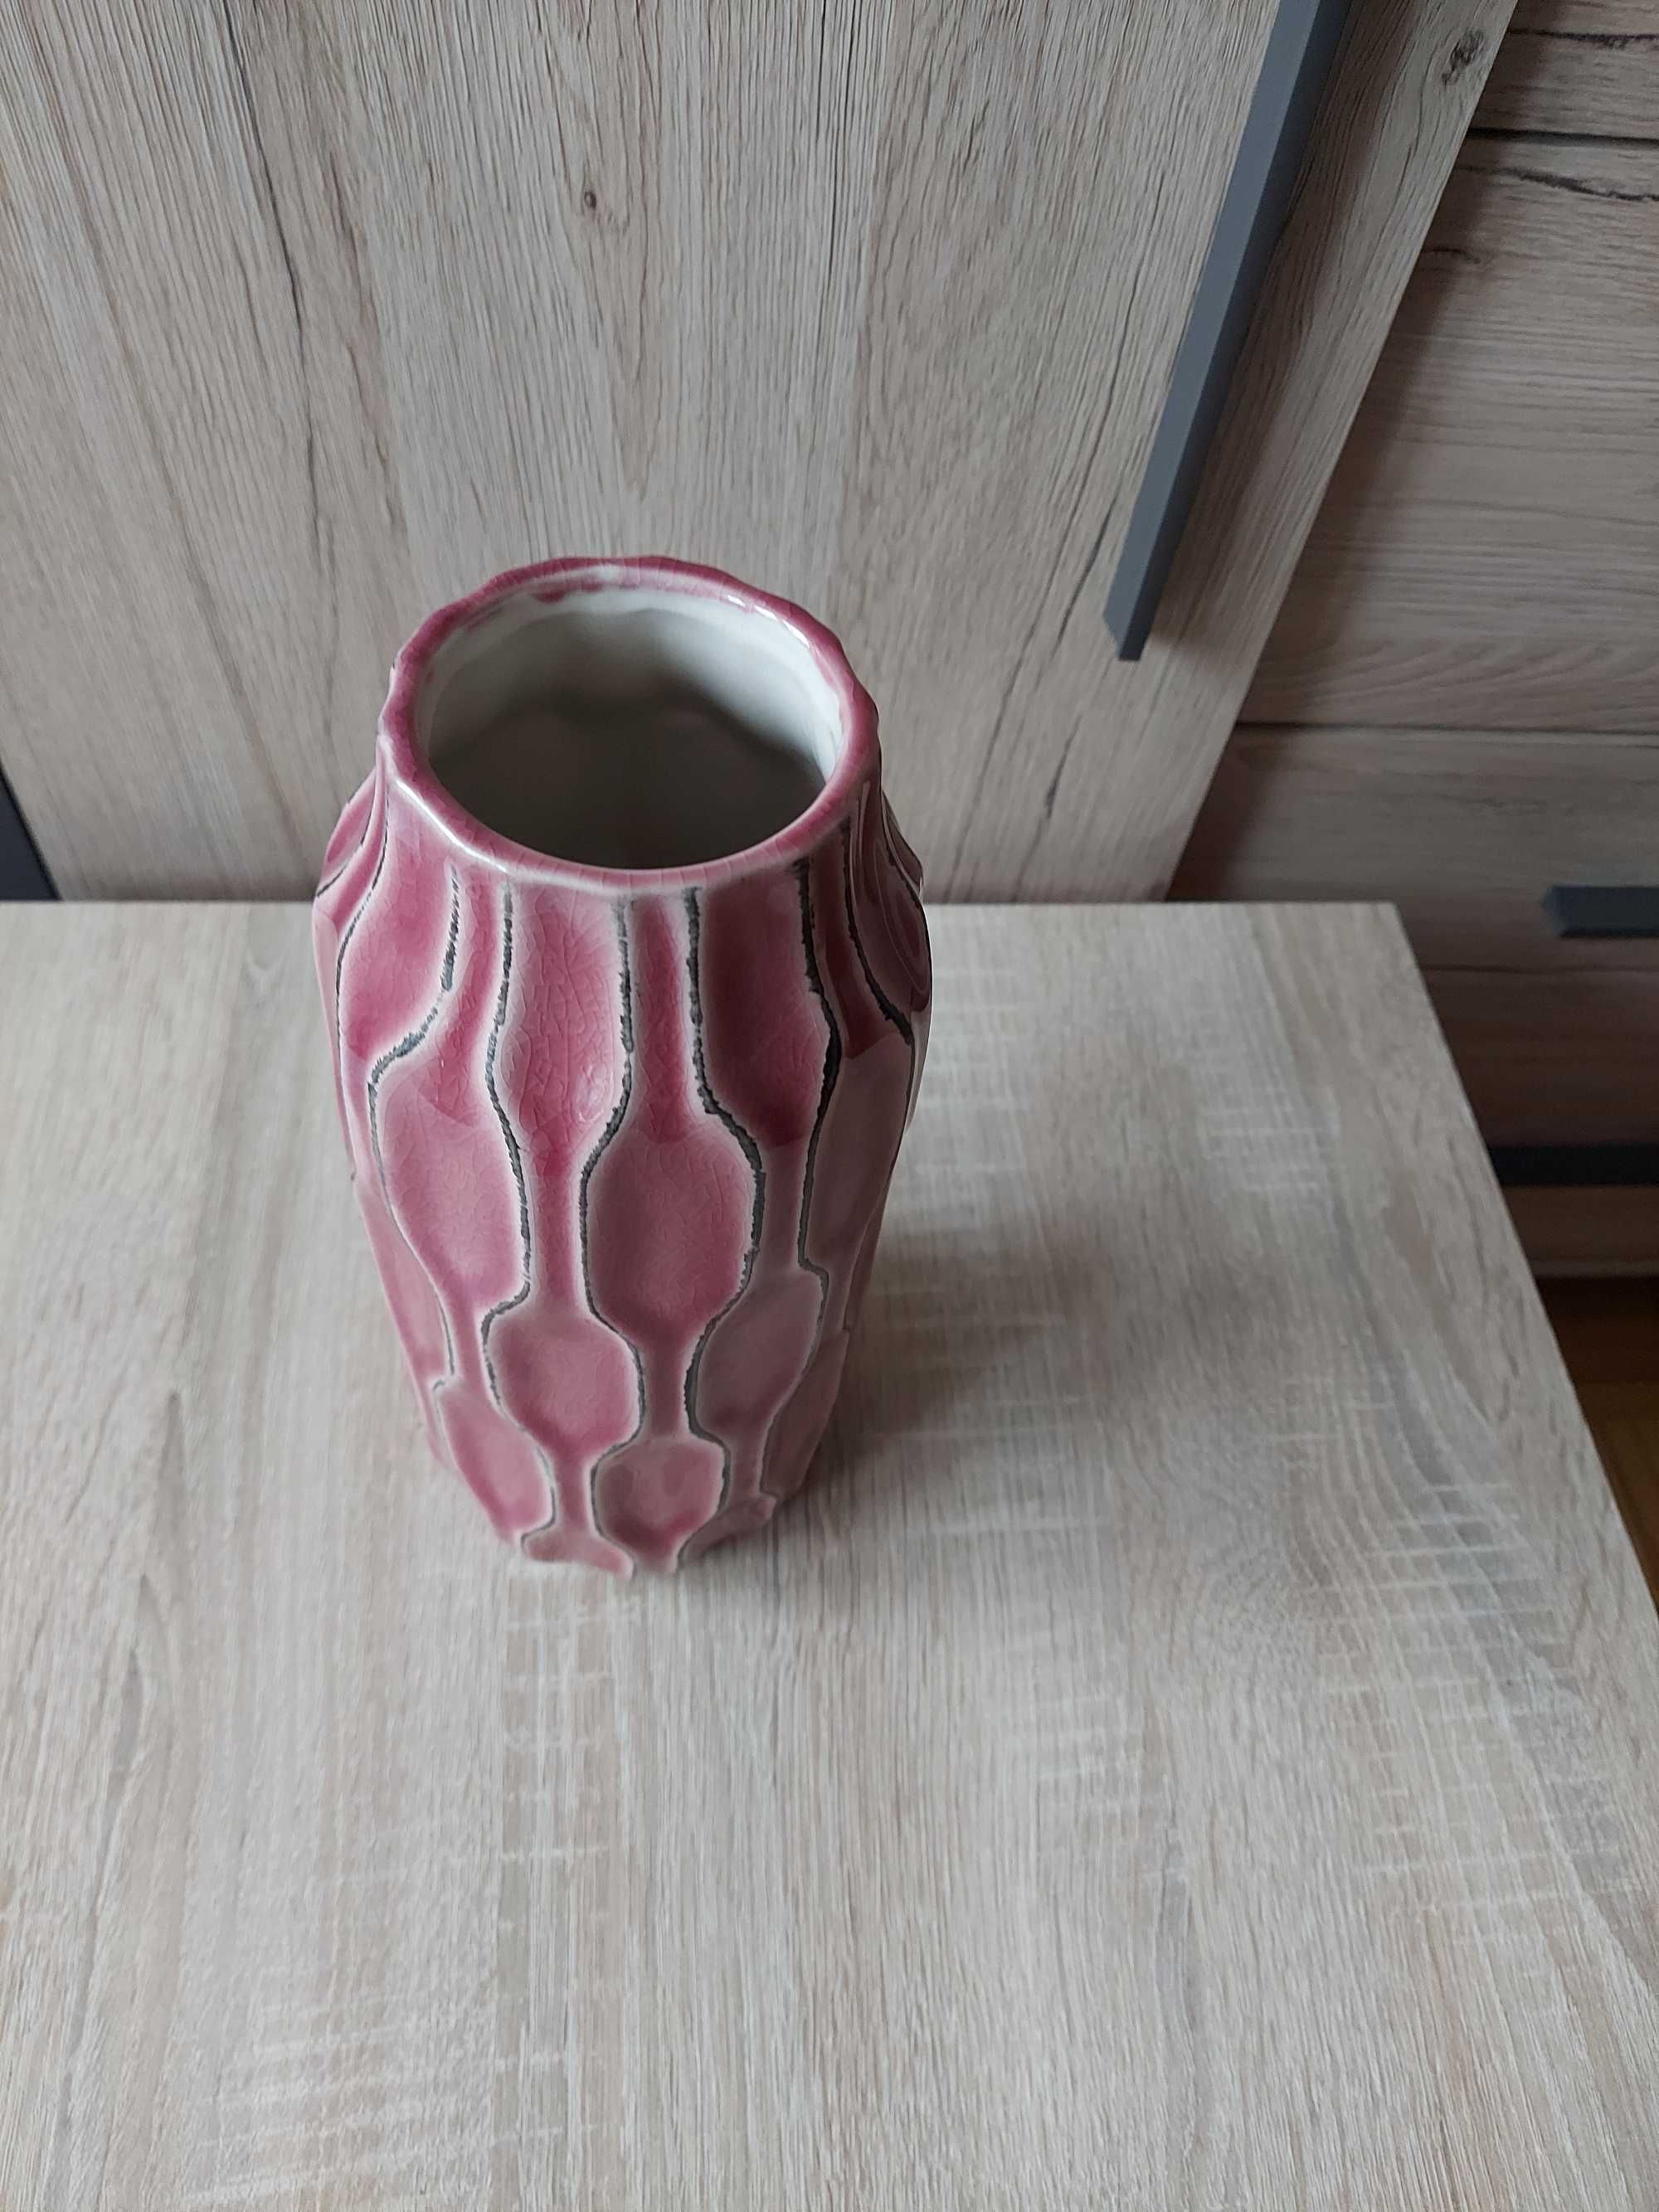 wazon ceramiczny